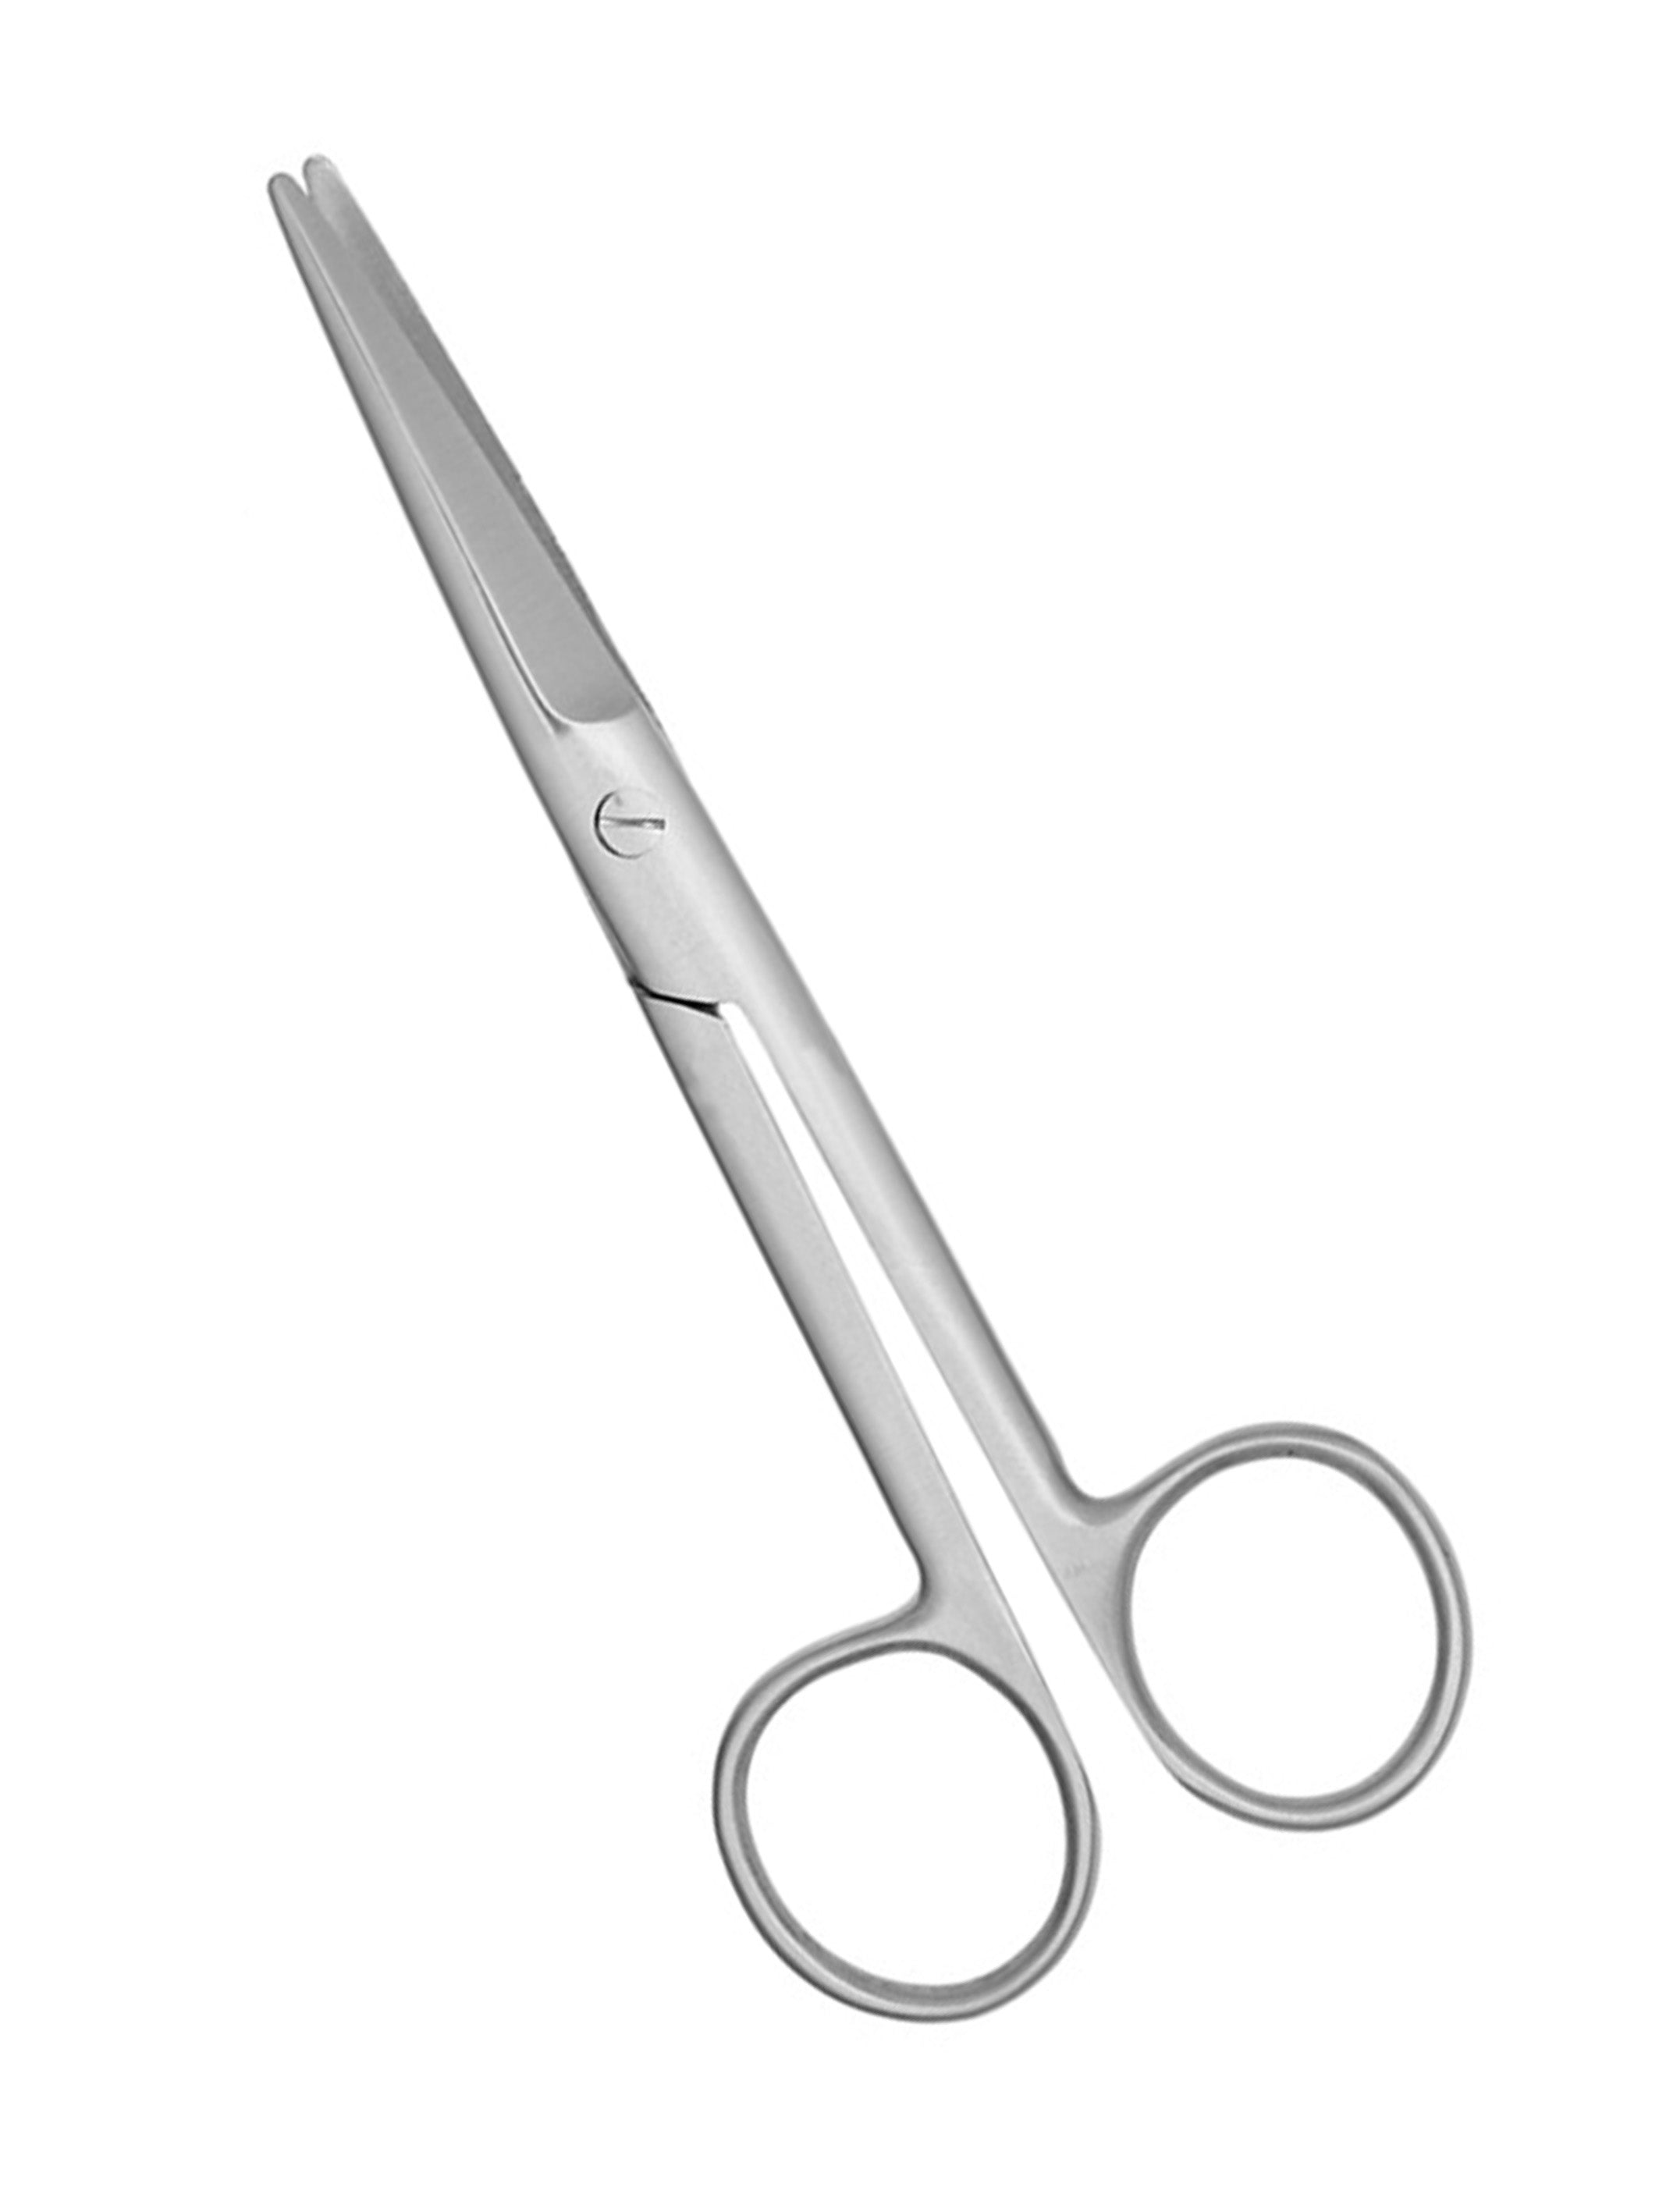 Surgical Scissors Operating Scissors 5 1-2"